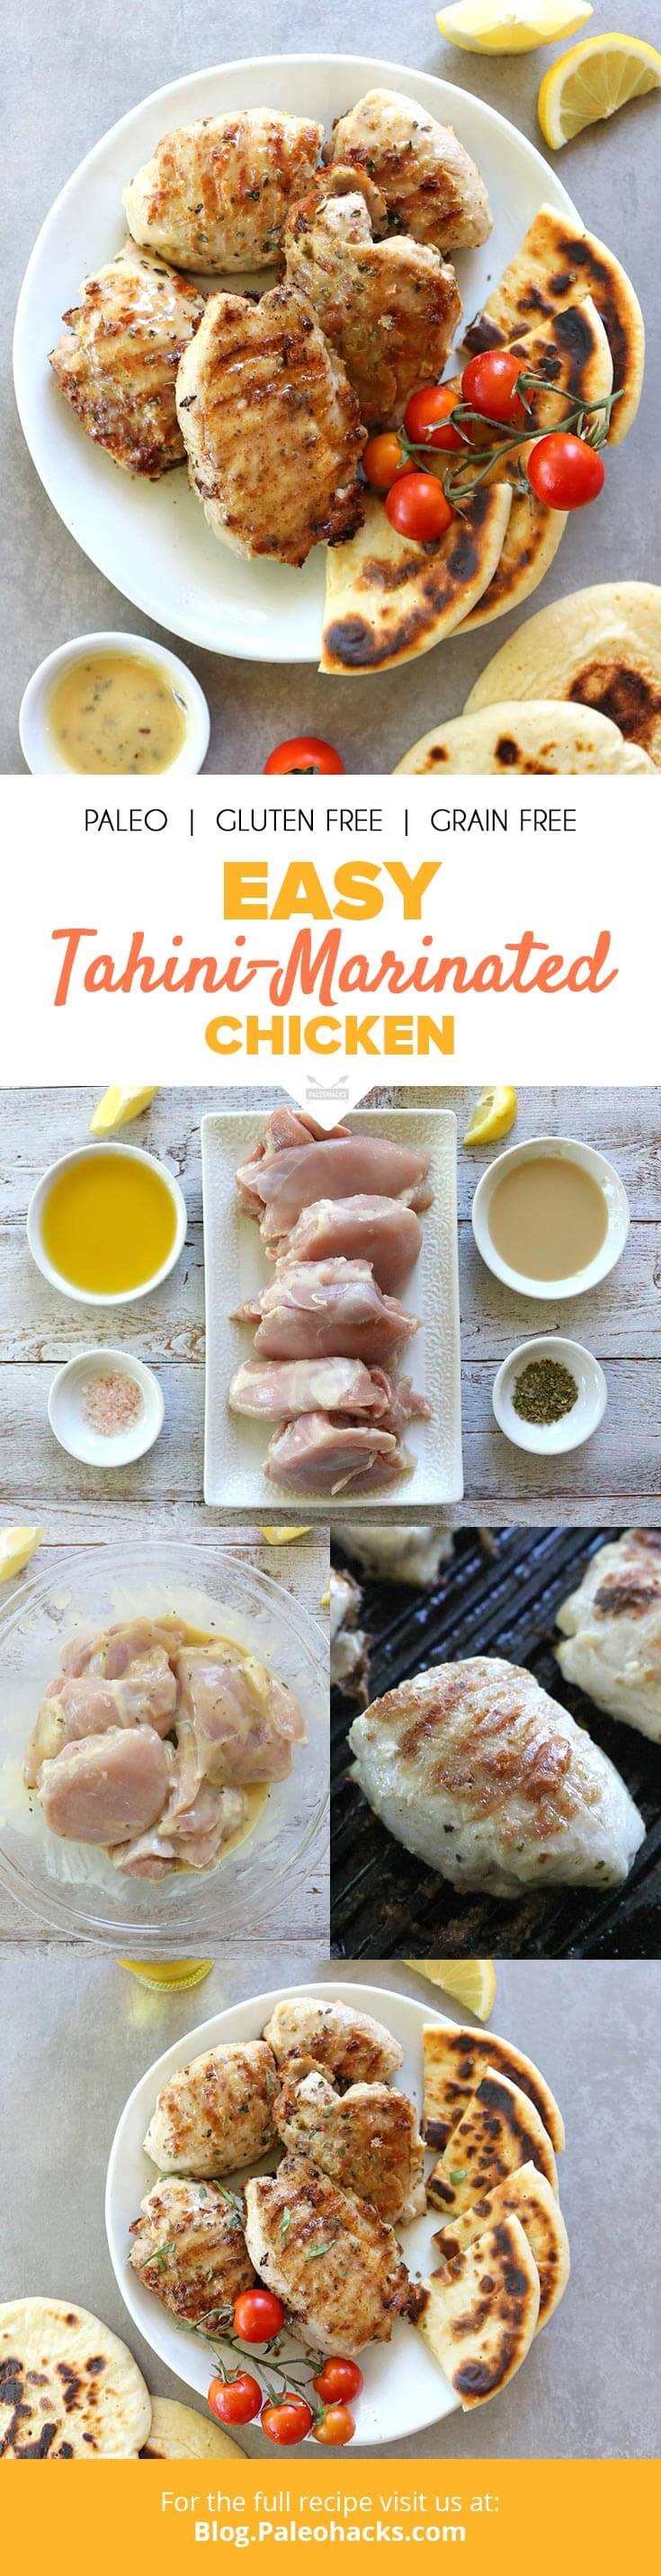 tahini-marinated chicken pin